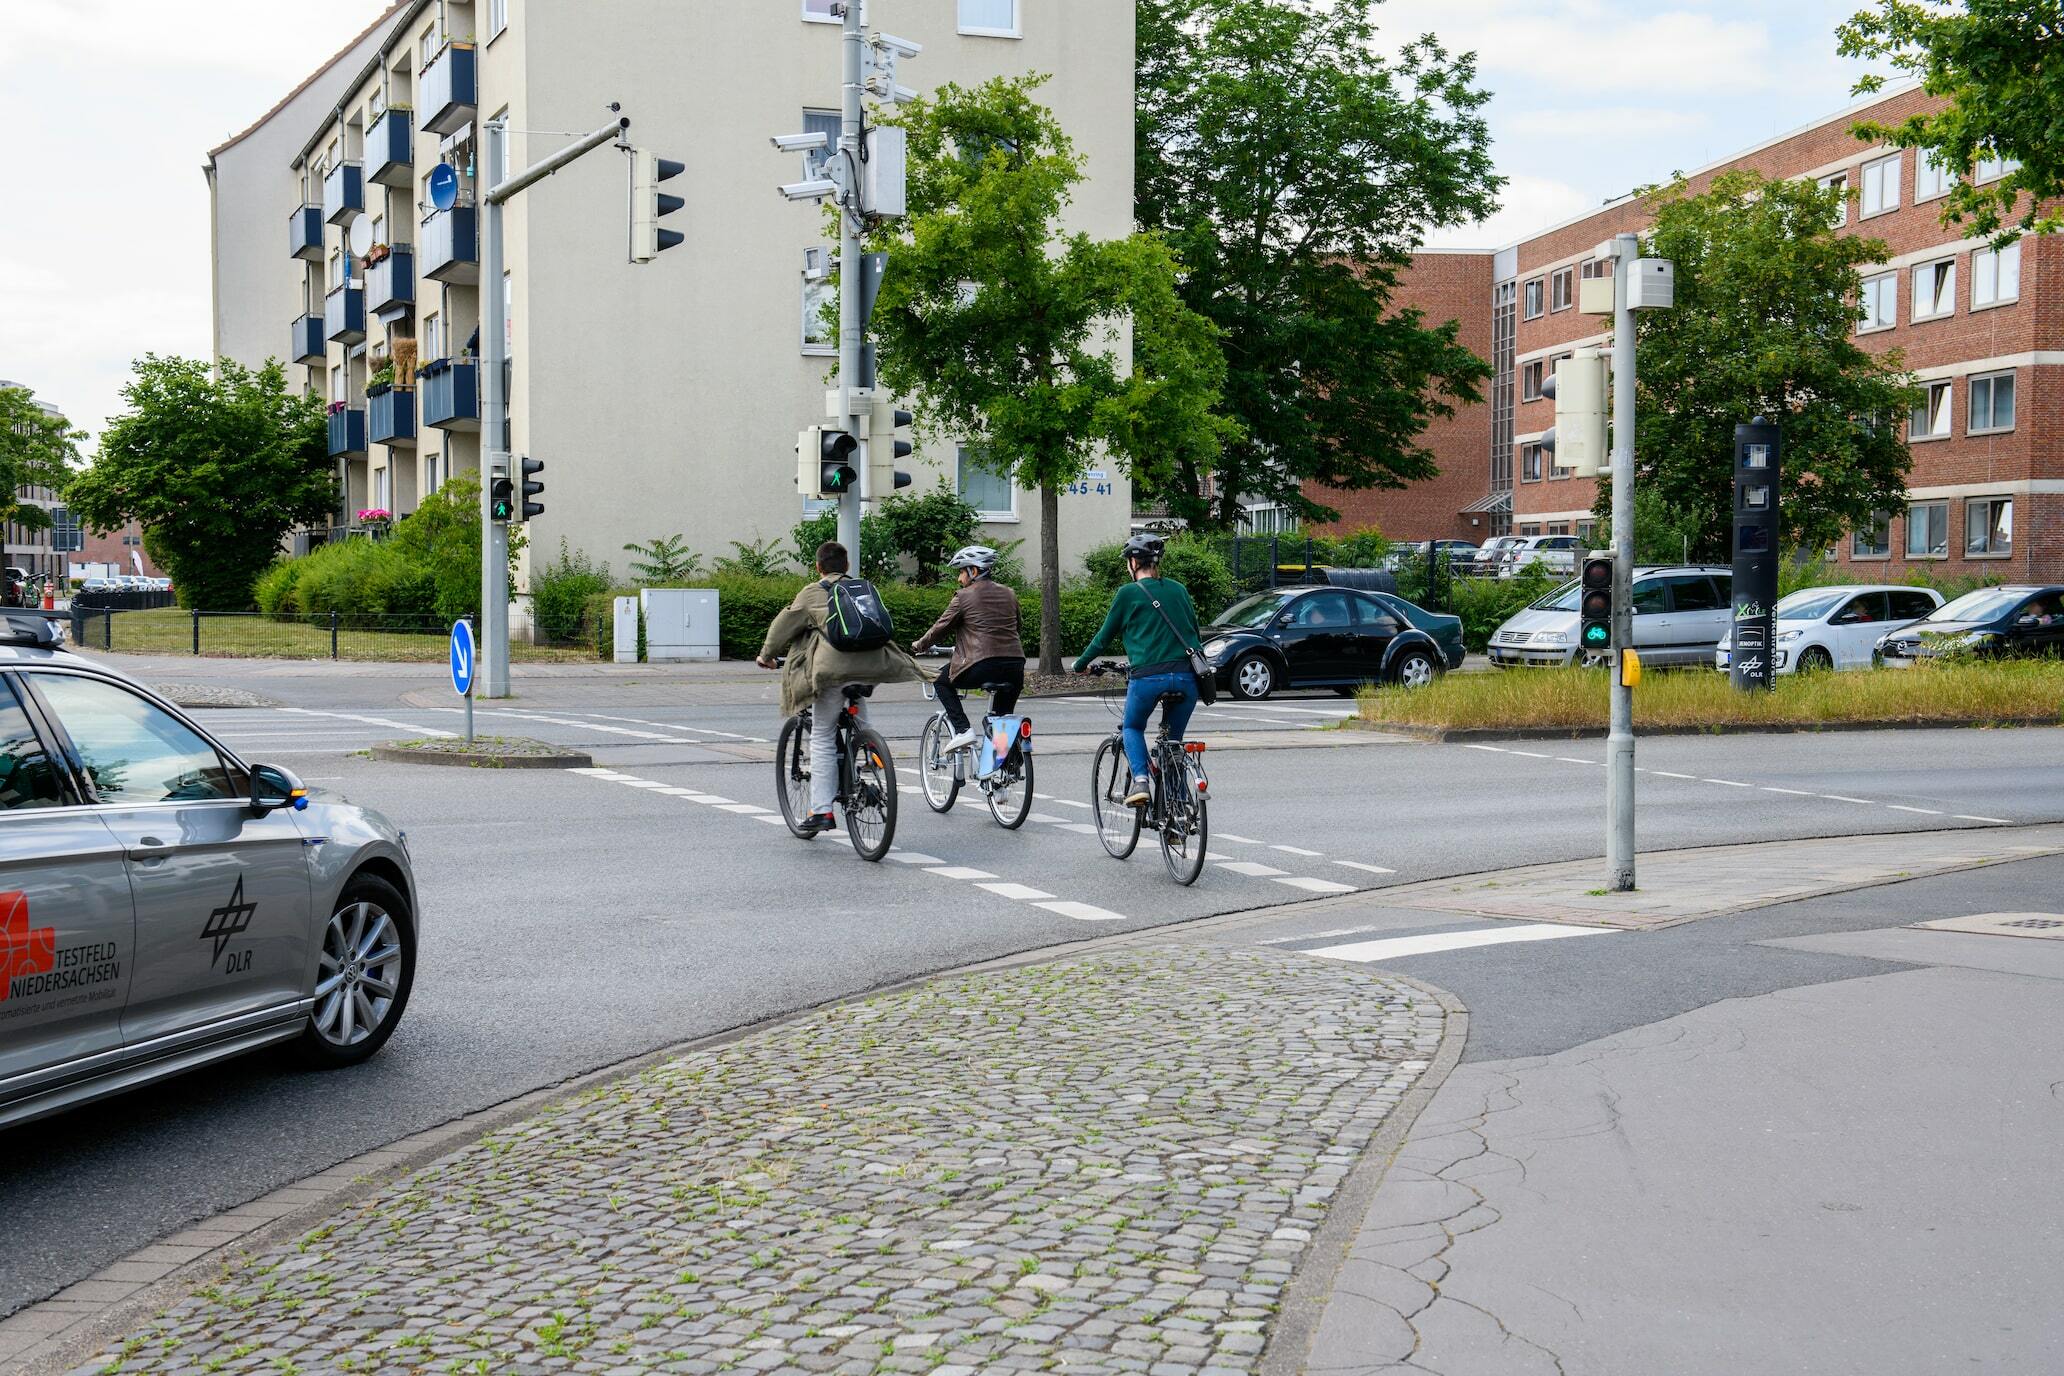 Ein Auto mit Aufklebern des DLR und des digitalen Testfelds Niedersachsen gewährt beim Rechtsabbiegen drei Fahrradfahrer*innen die Vorfahrt